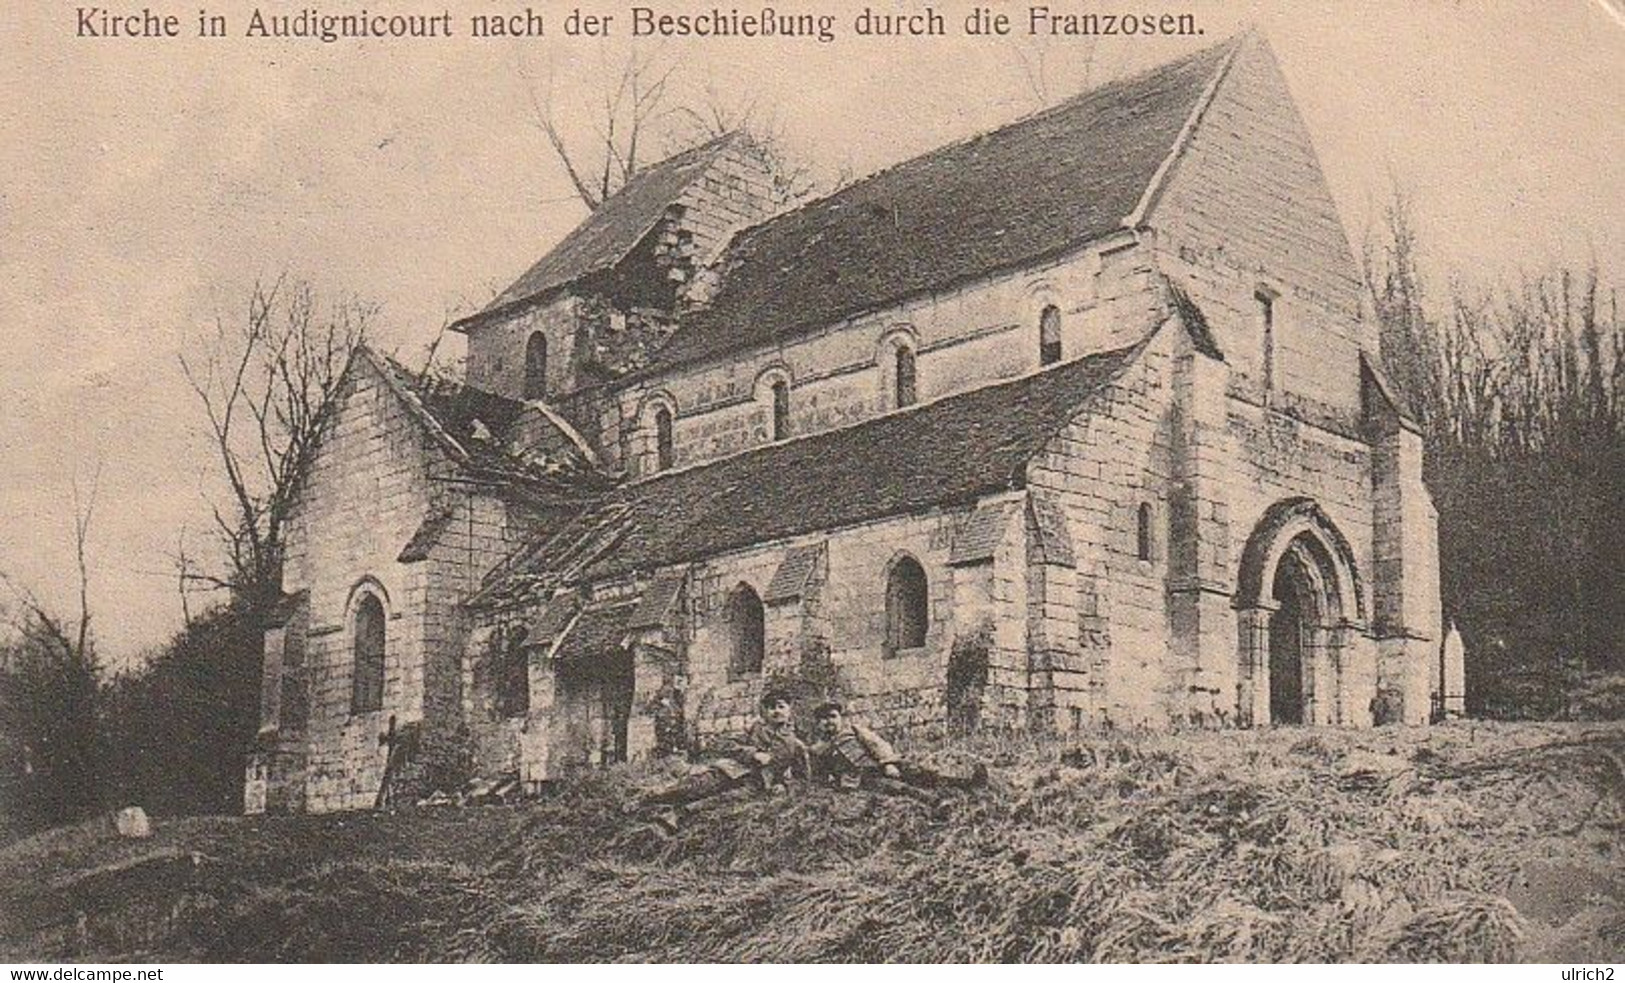 AK Audignicourt - Kirche Nach Der Beschießung Durch Die Franzosen - Feldpost Inf. Regt. Graf Bose - 1915  (60538) - Vic Sur Aisne